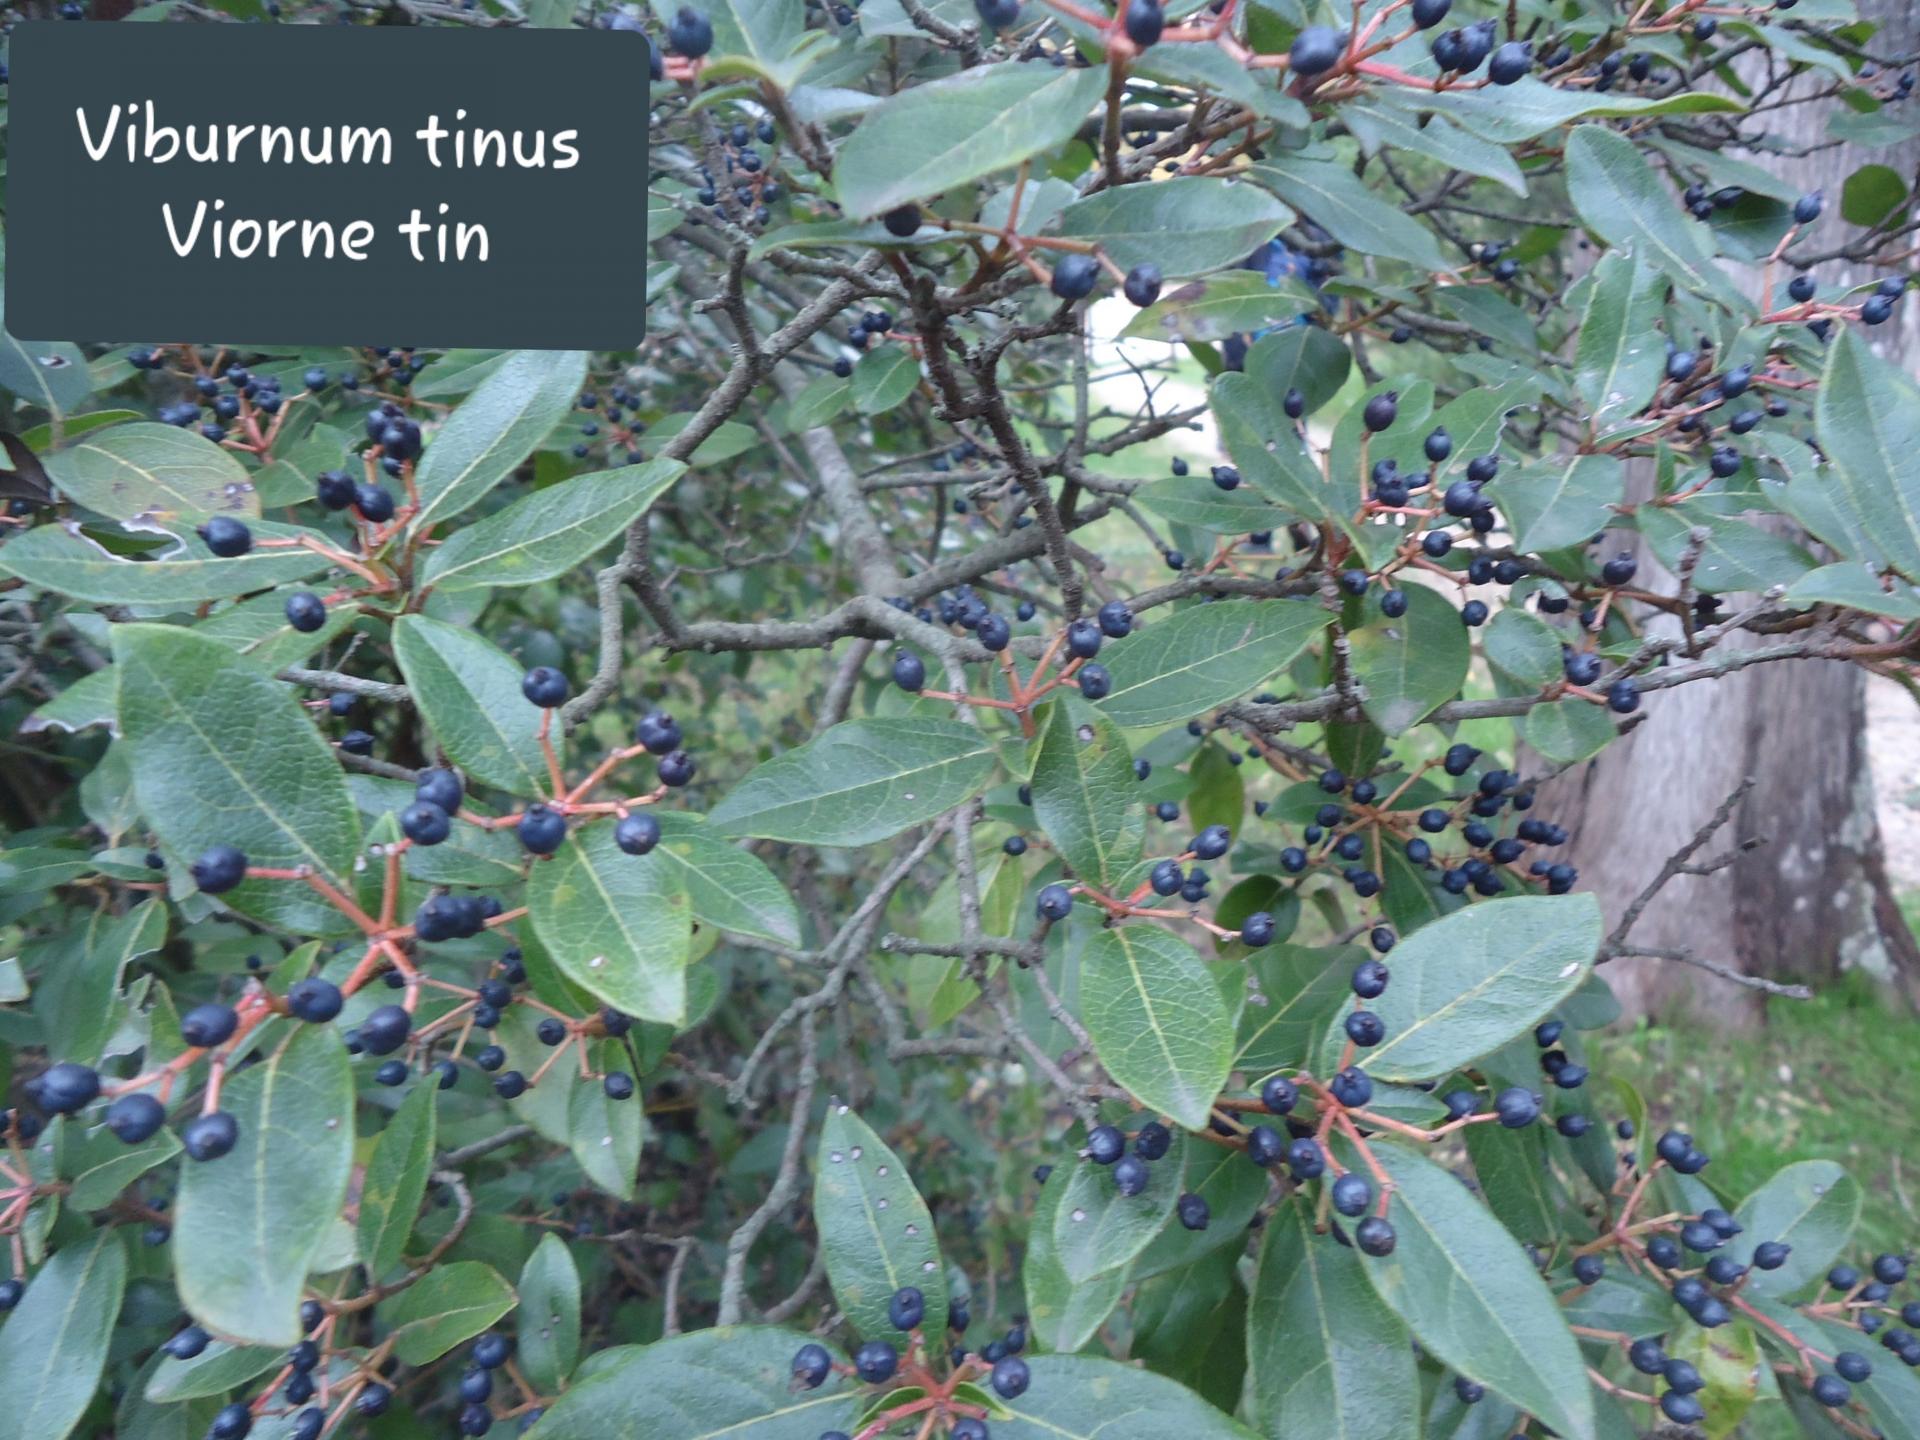 Viburnum tinus 28/11/19